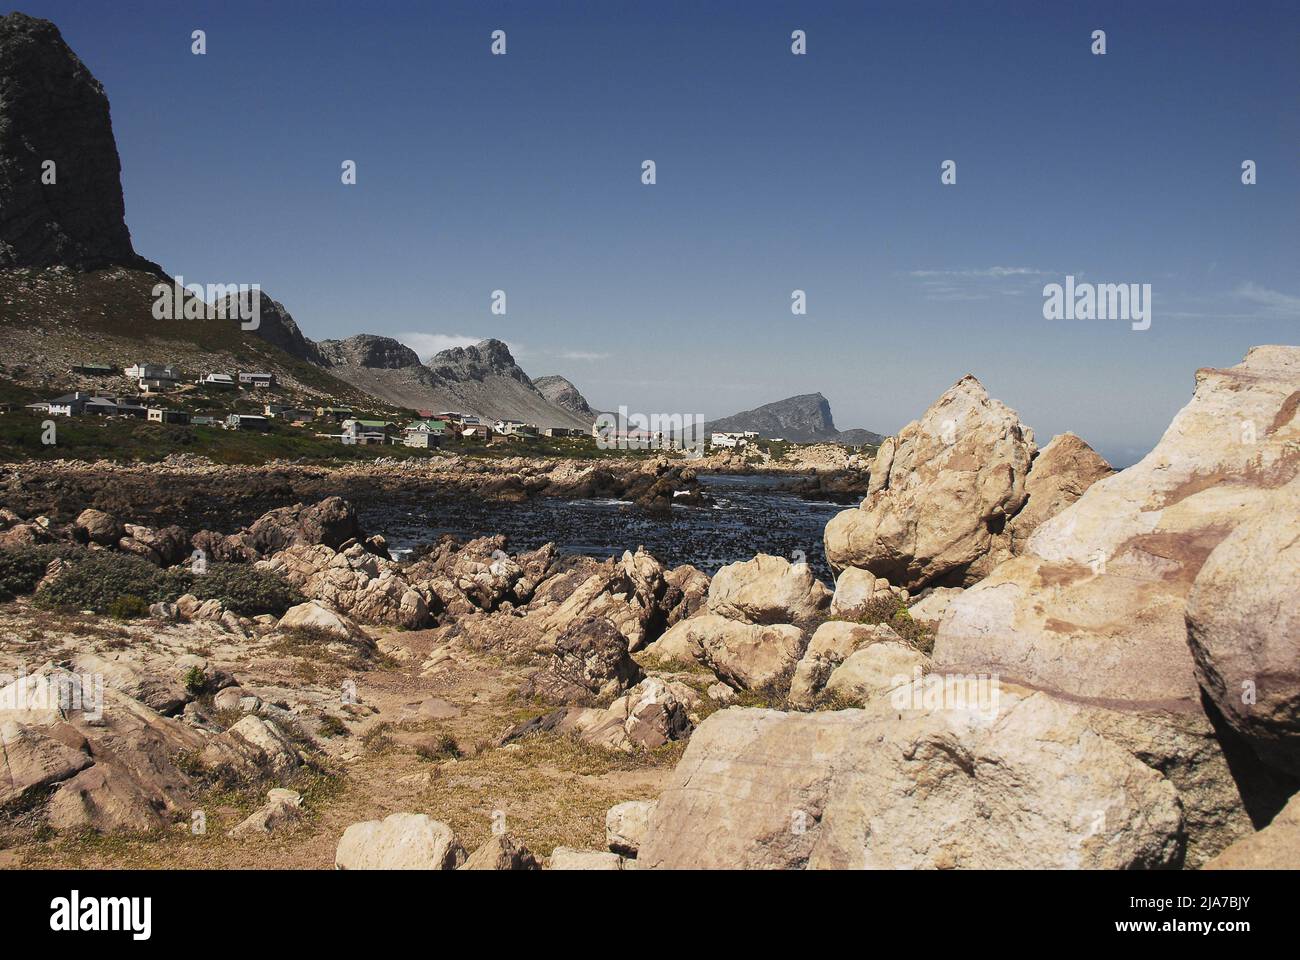 Panoramablick auf die Häuser in der Siedlung Rooi-Els zwischen hohen Bergklippen und der felsigen, zerklüfteten Küste Südafrikas. Stockfoto